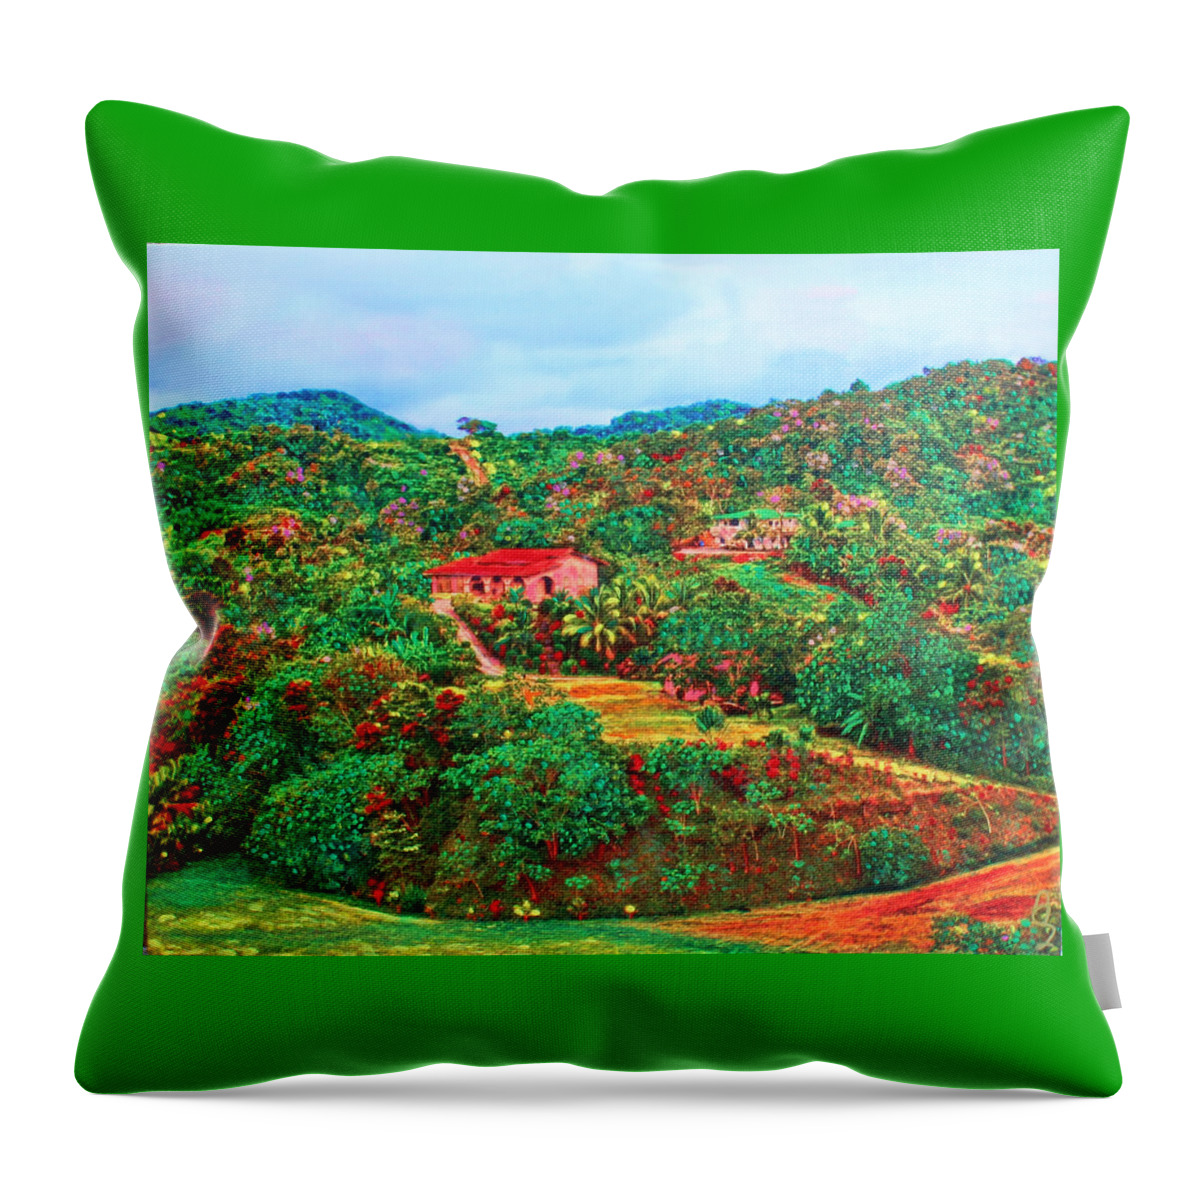 Mahogany Bay Throw Pillow featuring the painting Scene From Mahogony Bay Honduras by Deborah Boyd